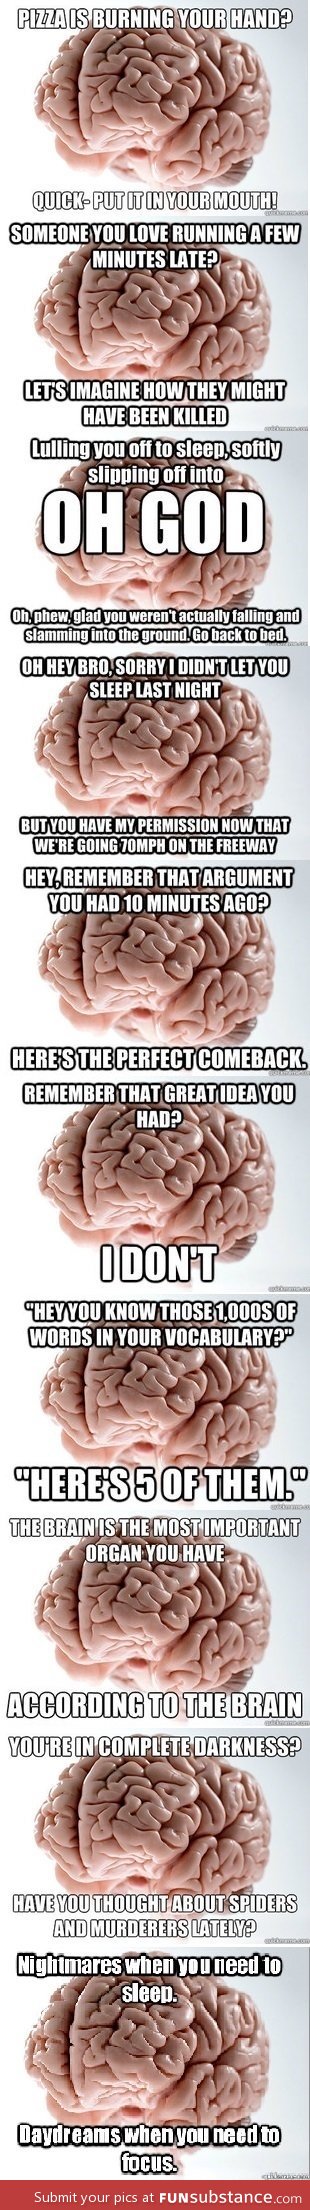 Scumbag brain comp